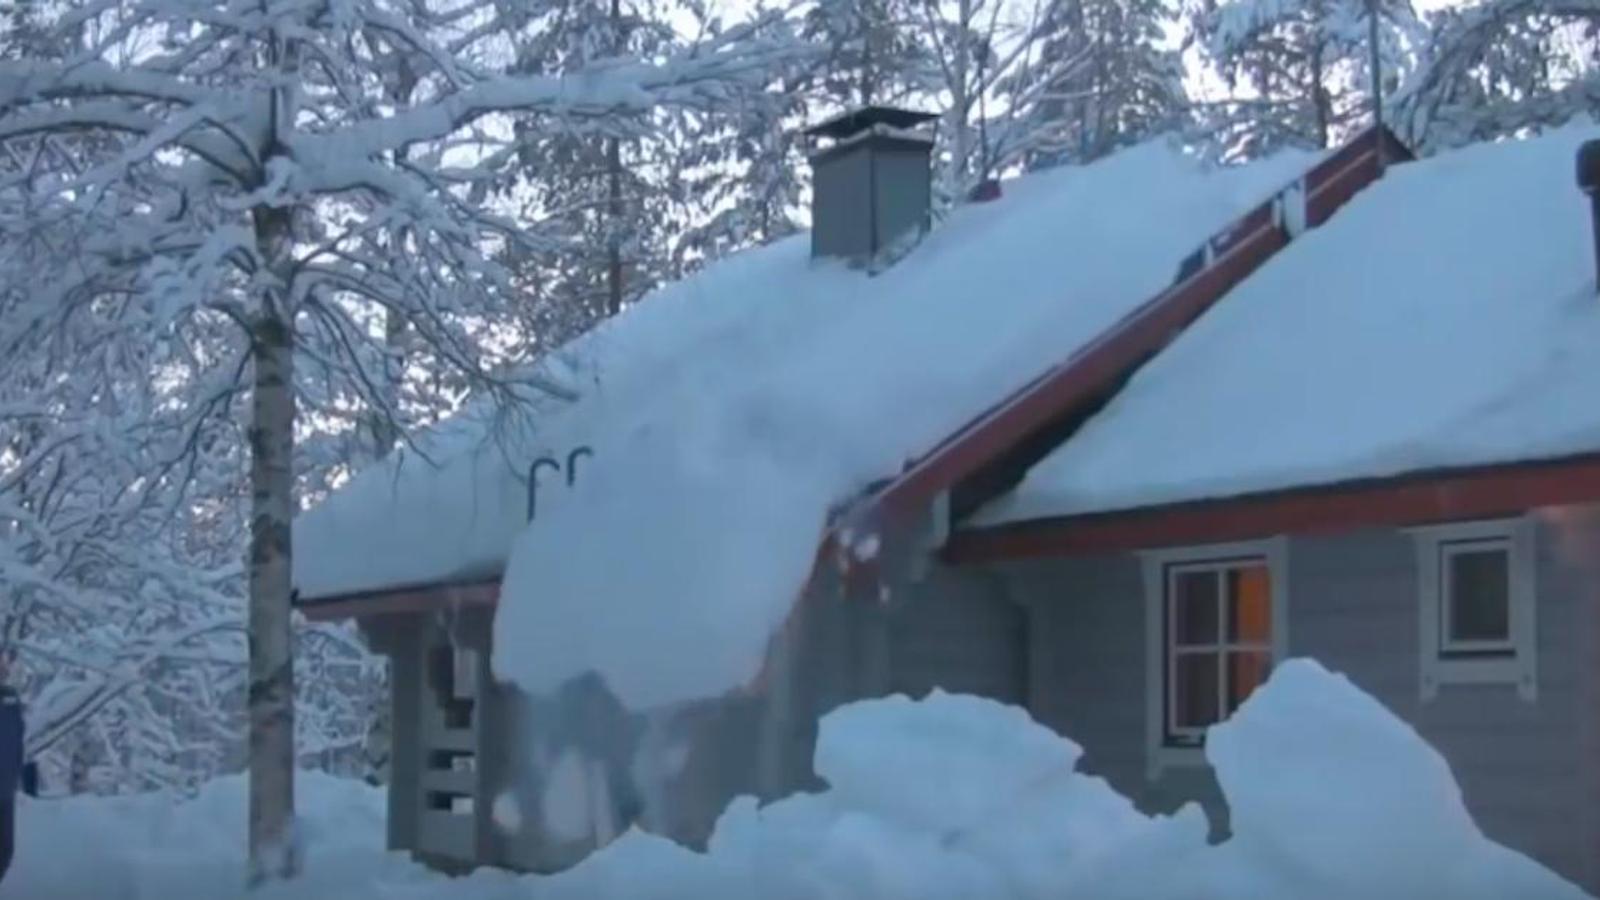 Cet homme a trouvé un moyen facile  et sécuritaire d'enlever la neige d'une toiture